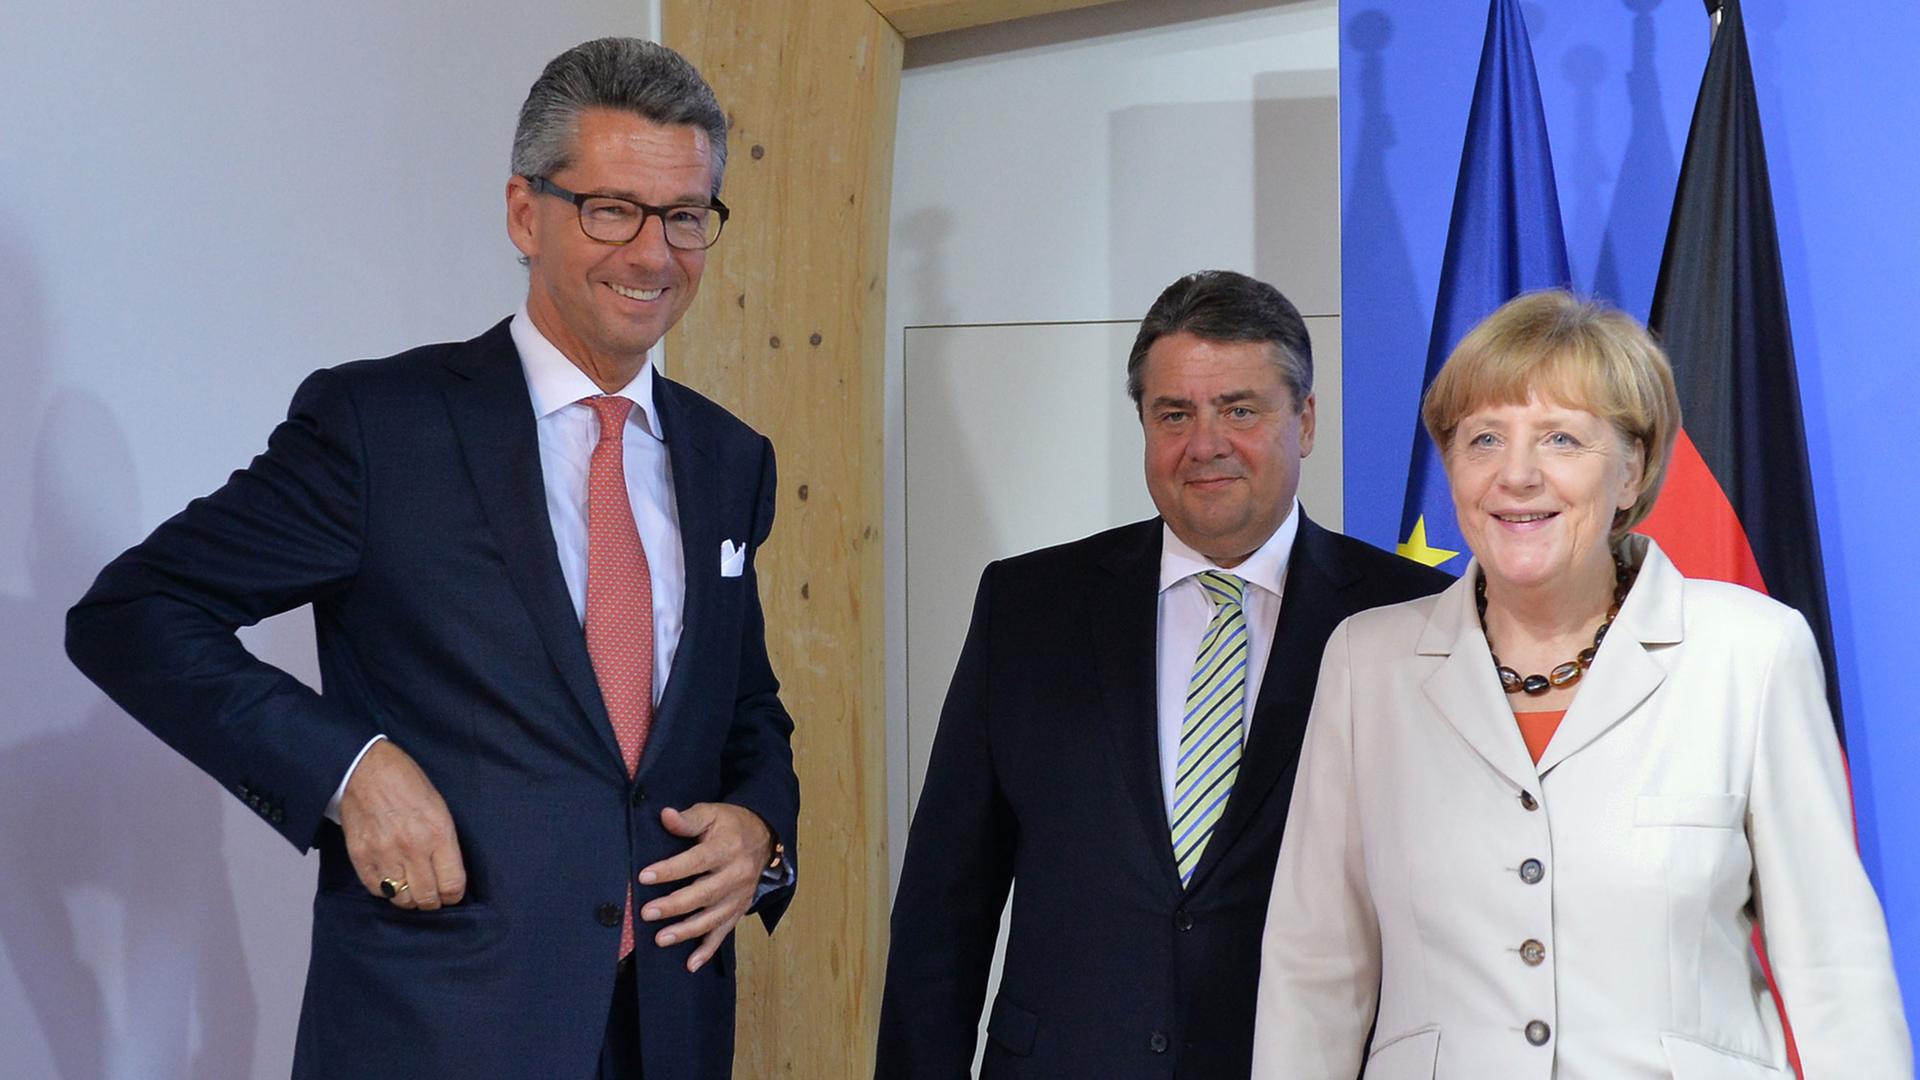 Bundeskanzlerin Angela Merkel (CDU), Bundeswirtschaftsminister Sigmar Gabriel (SPD/2.v.l.) und BDI-Präsident Ulrich Grillo (l).